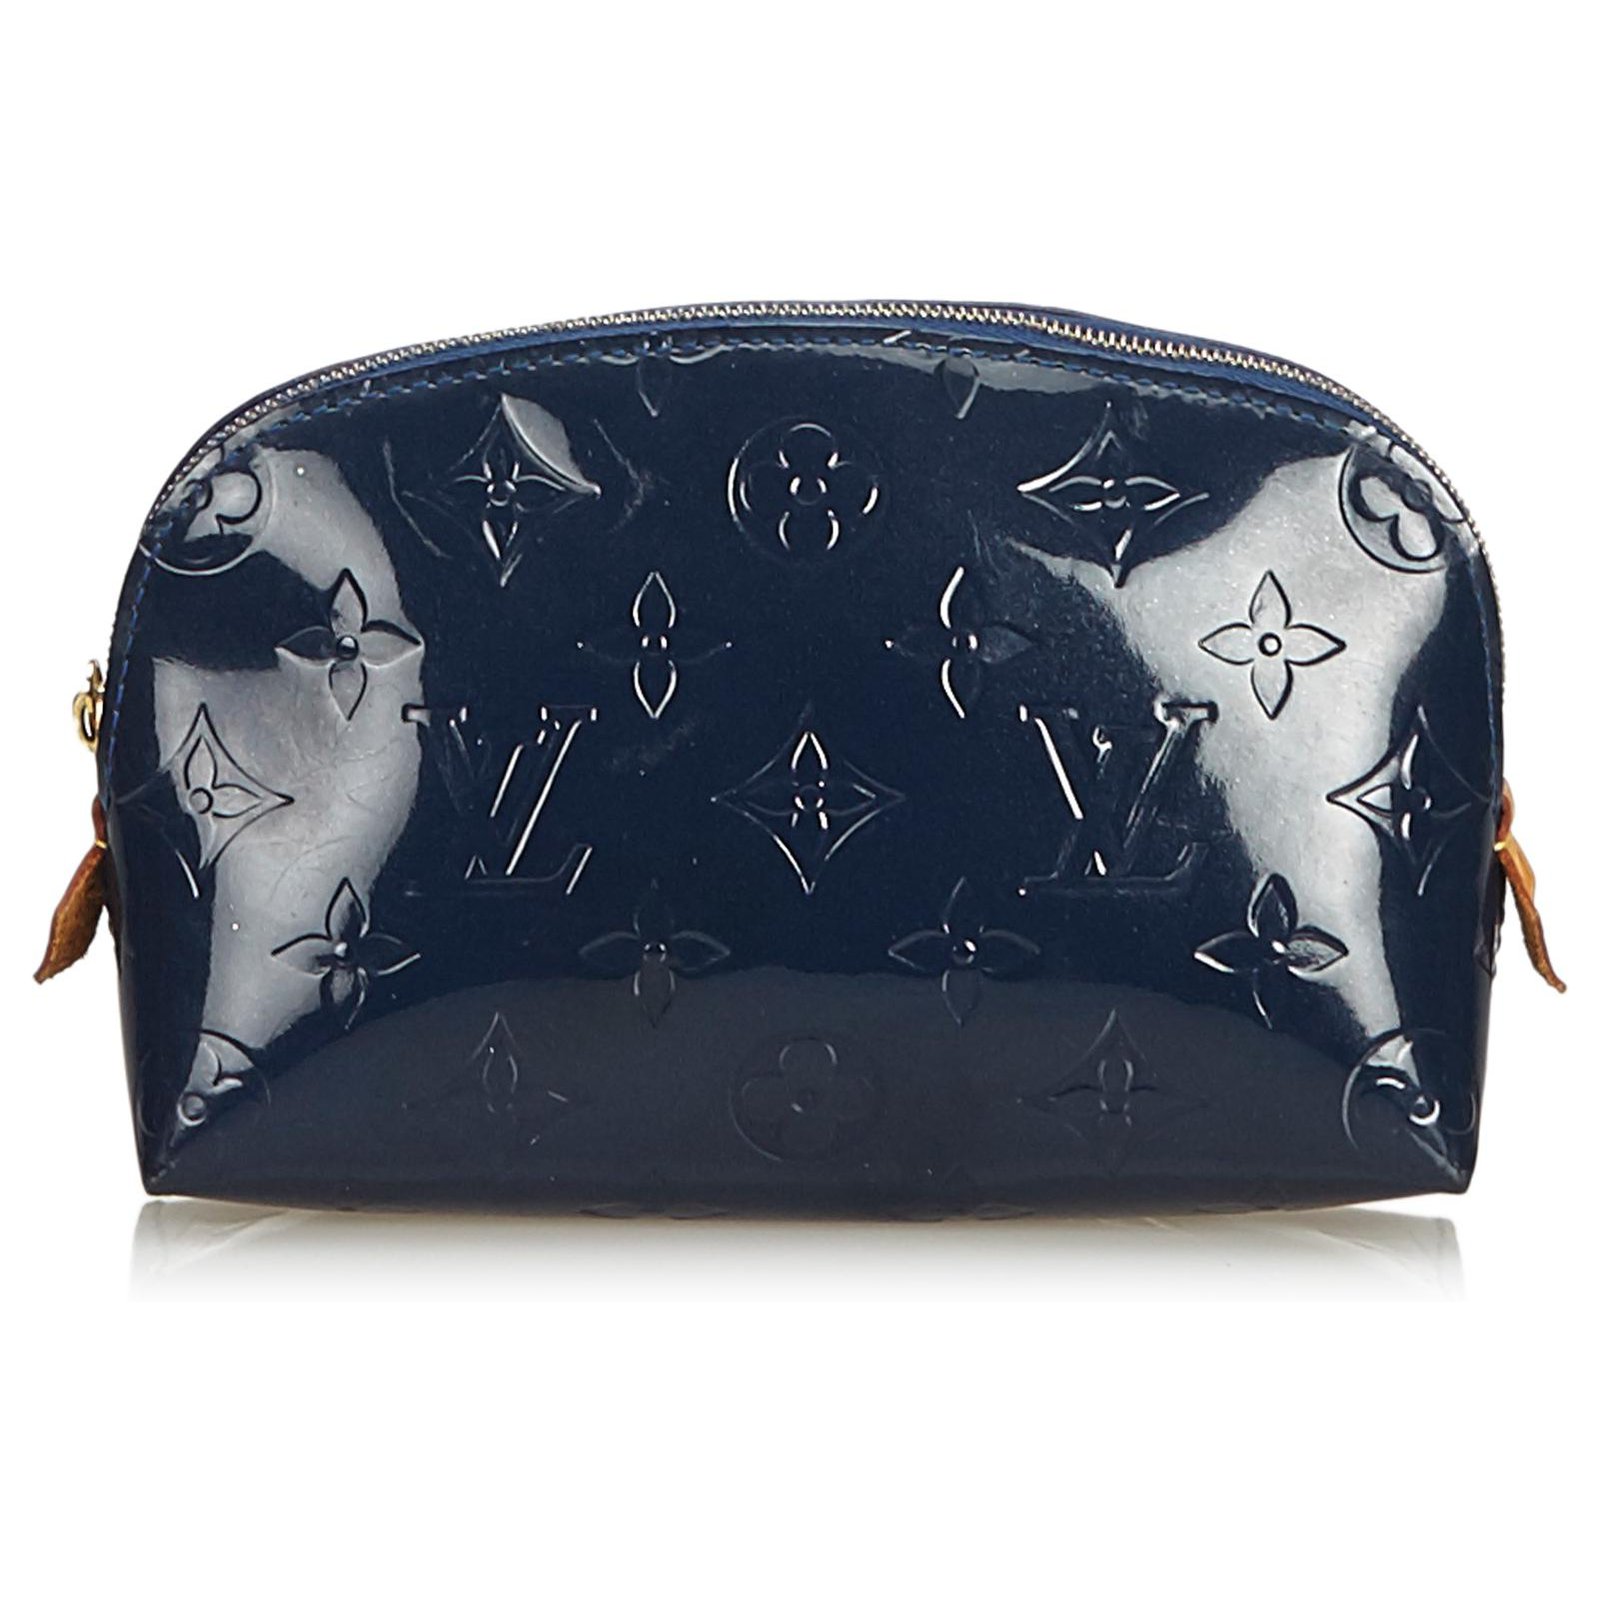 Louis Vuitton Louis Vuitton Cosmetic Bags & Handbags for Women